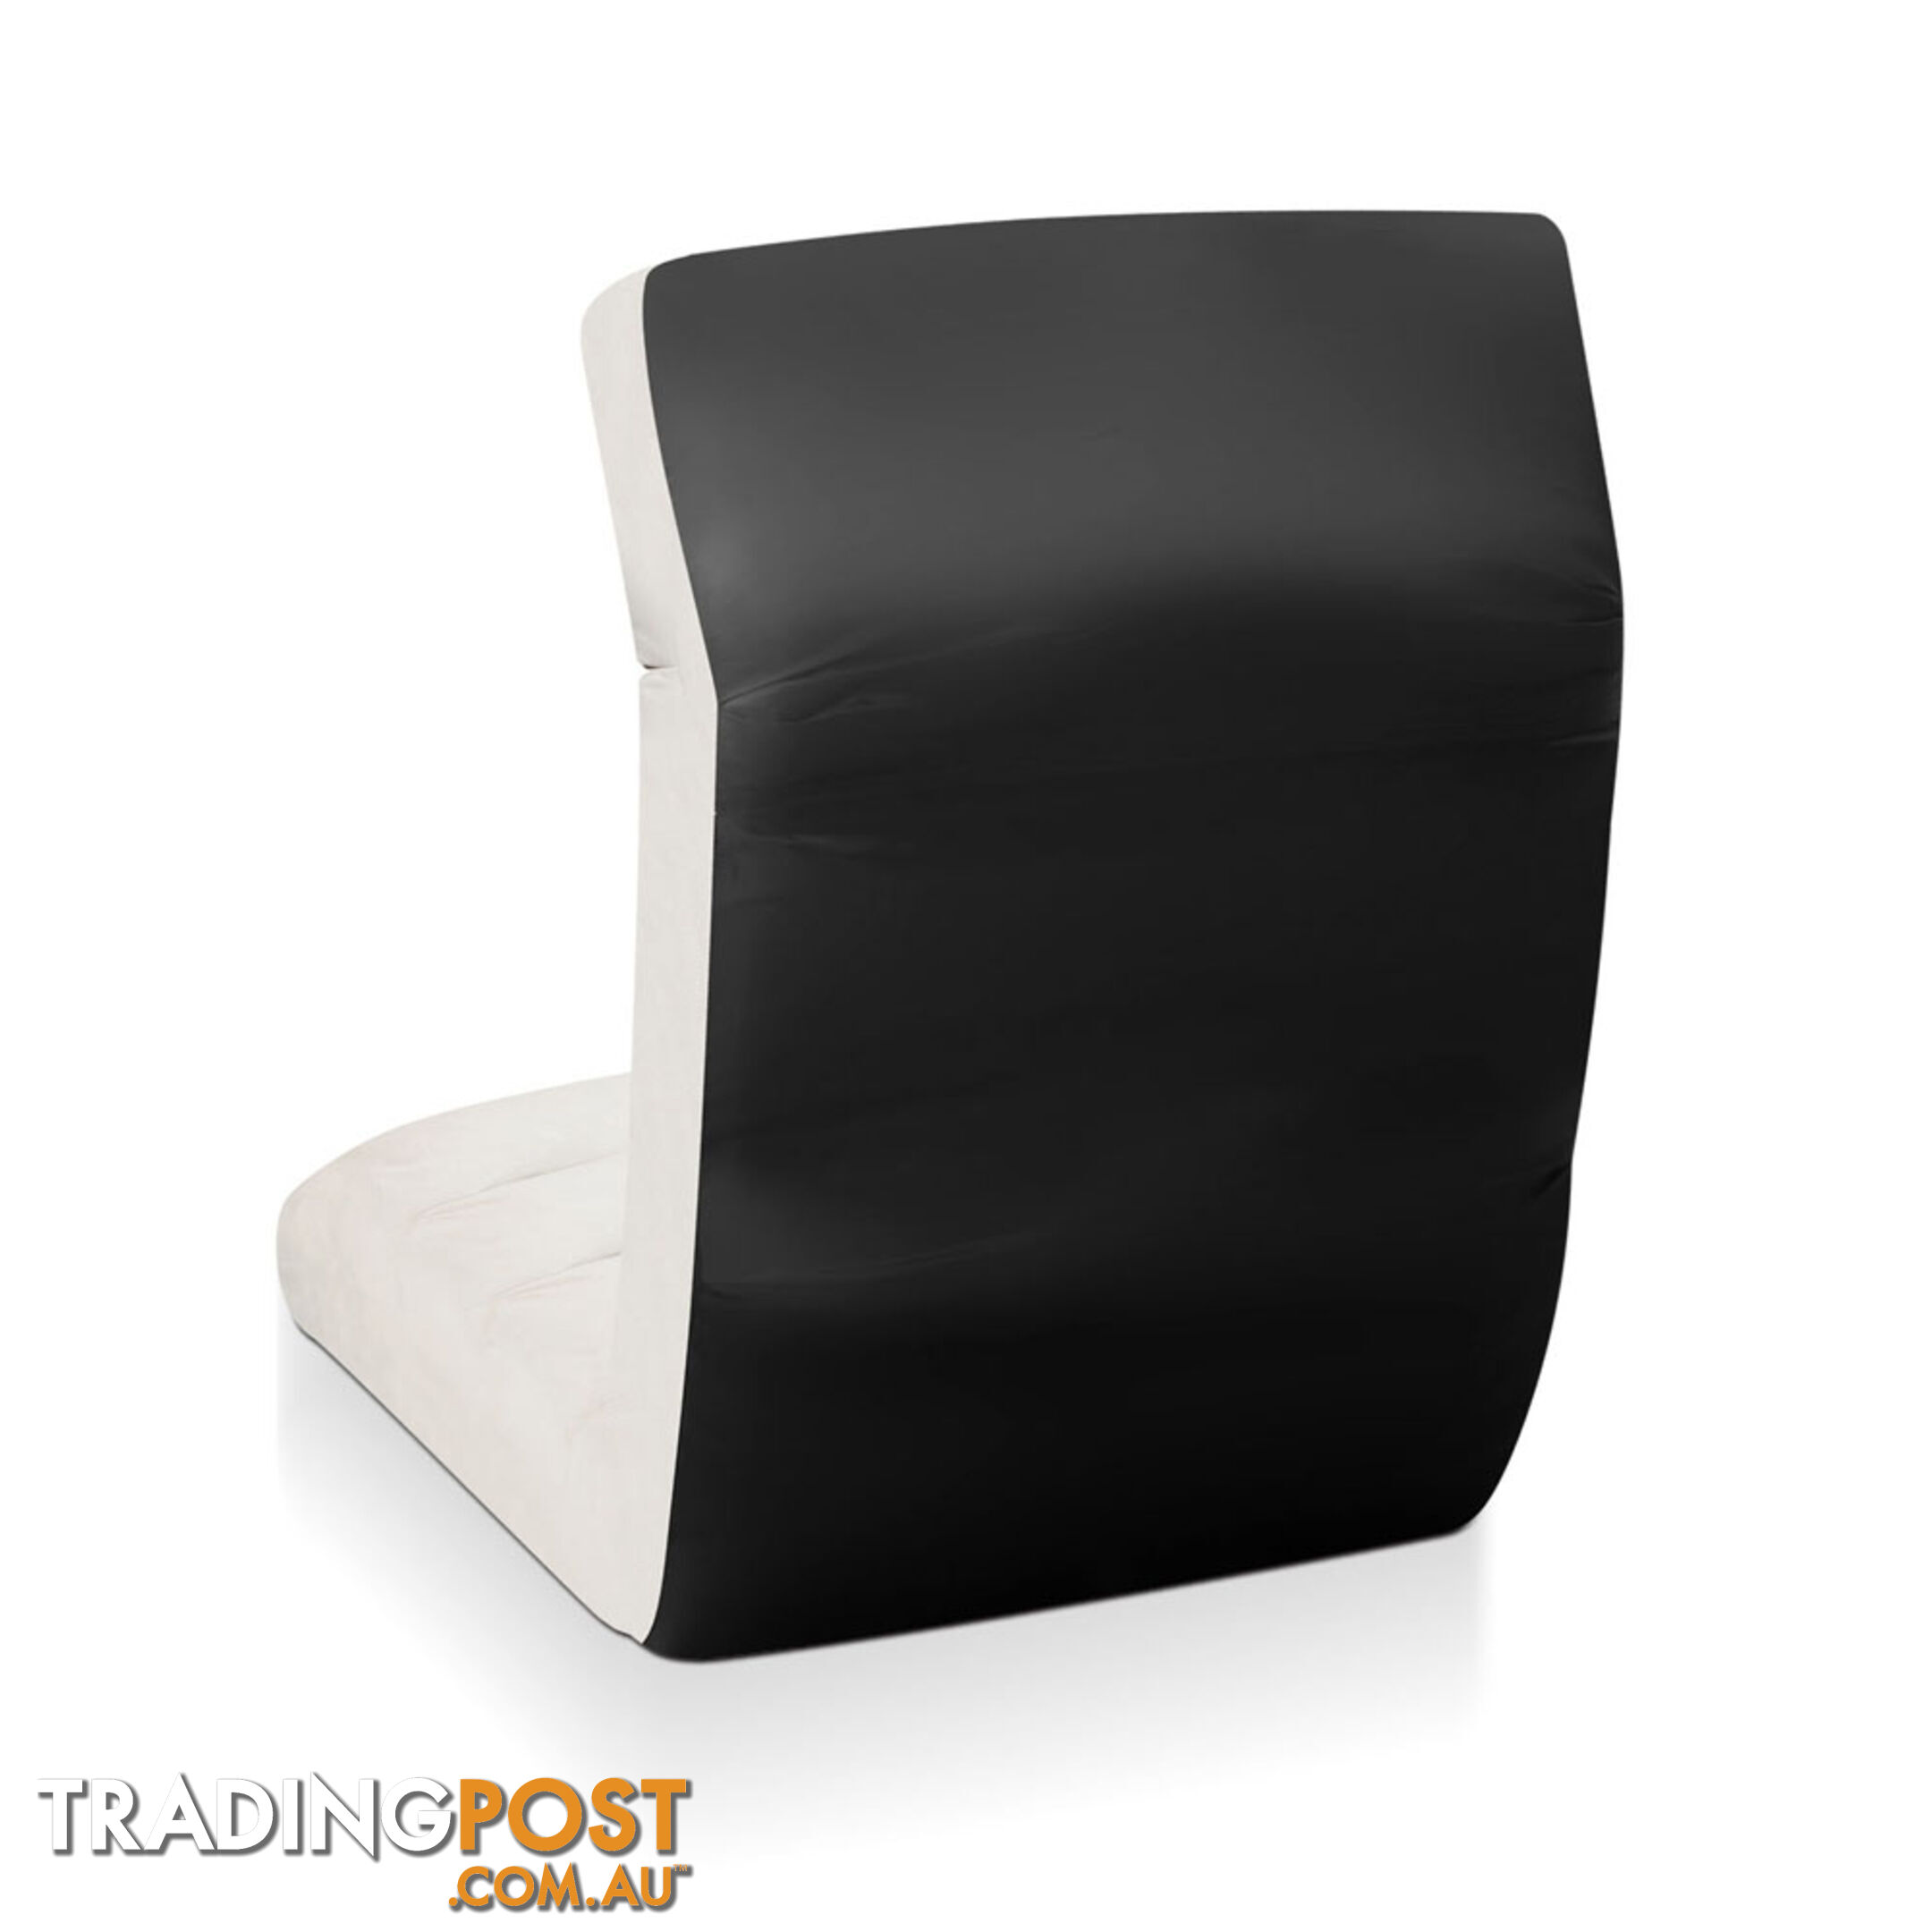 Lounge Sofa Chair - 75 Adjustable Angles _ Ivory